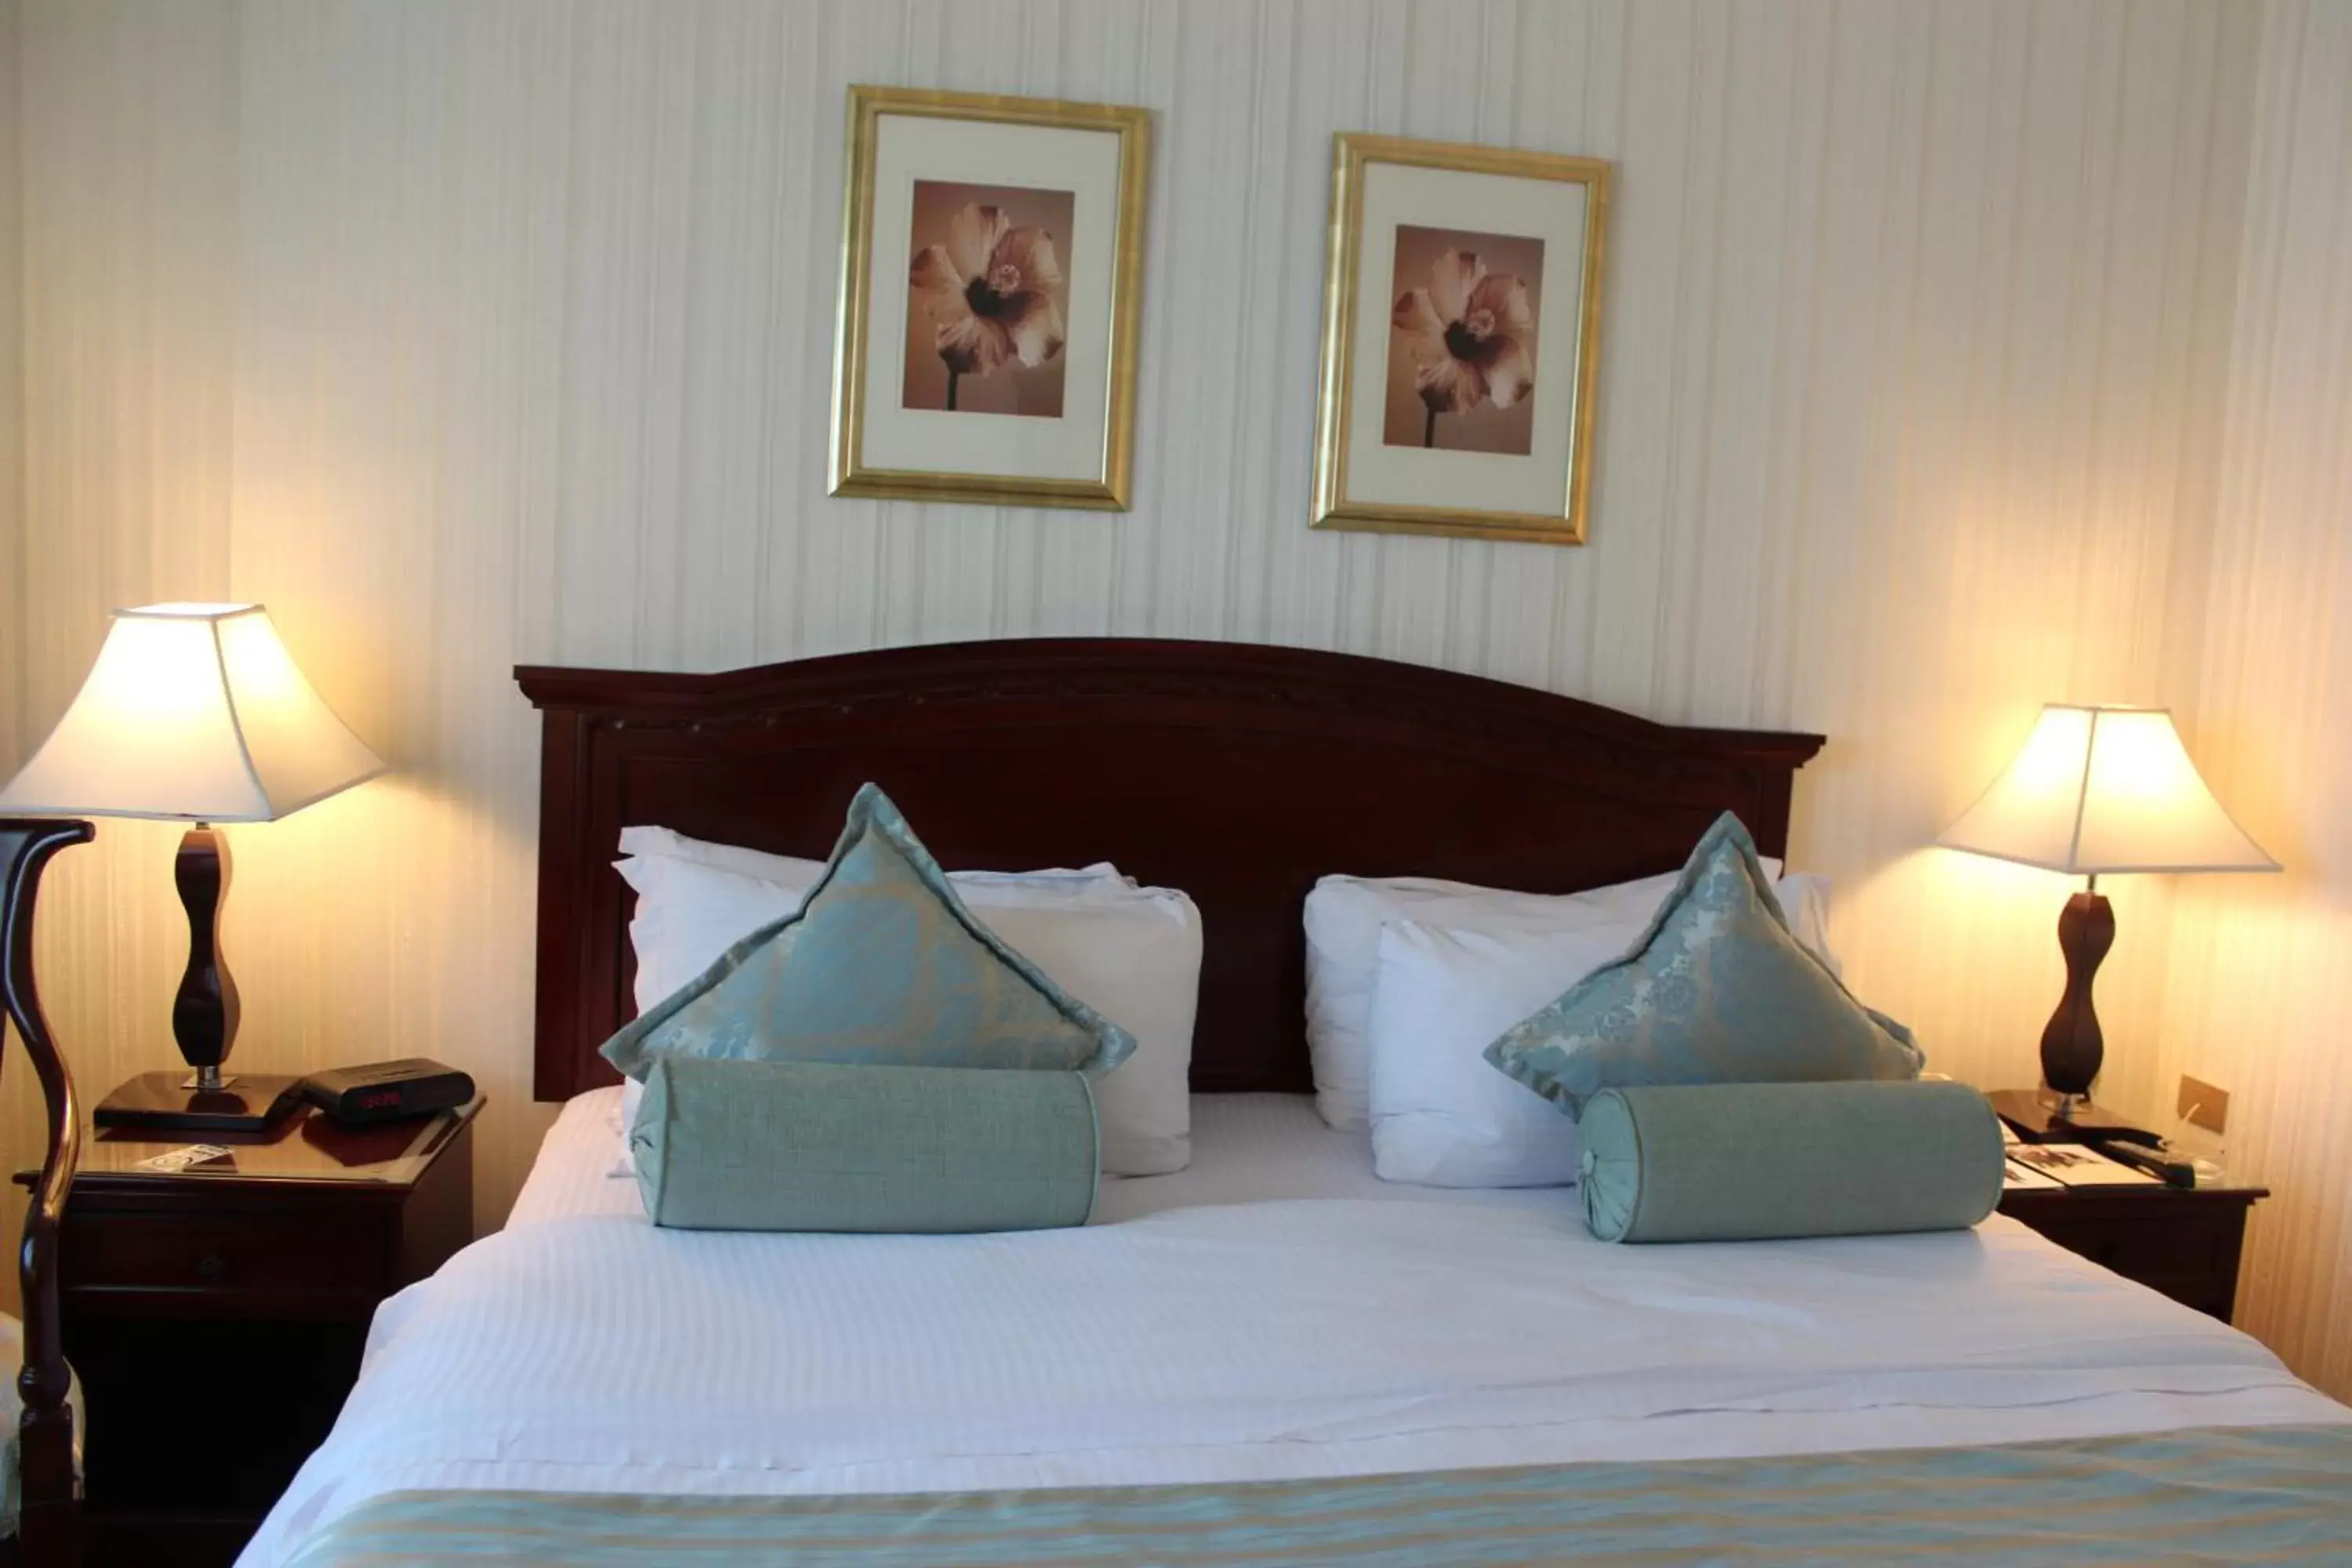 Bed in Swiss Al Hamra Hotel